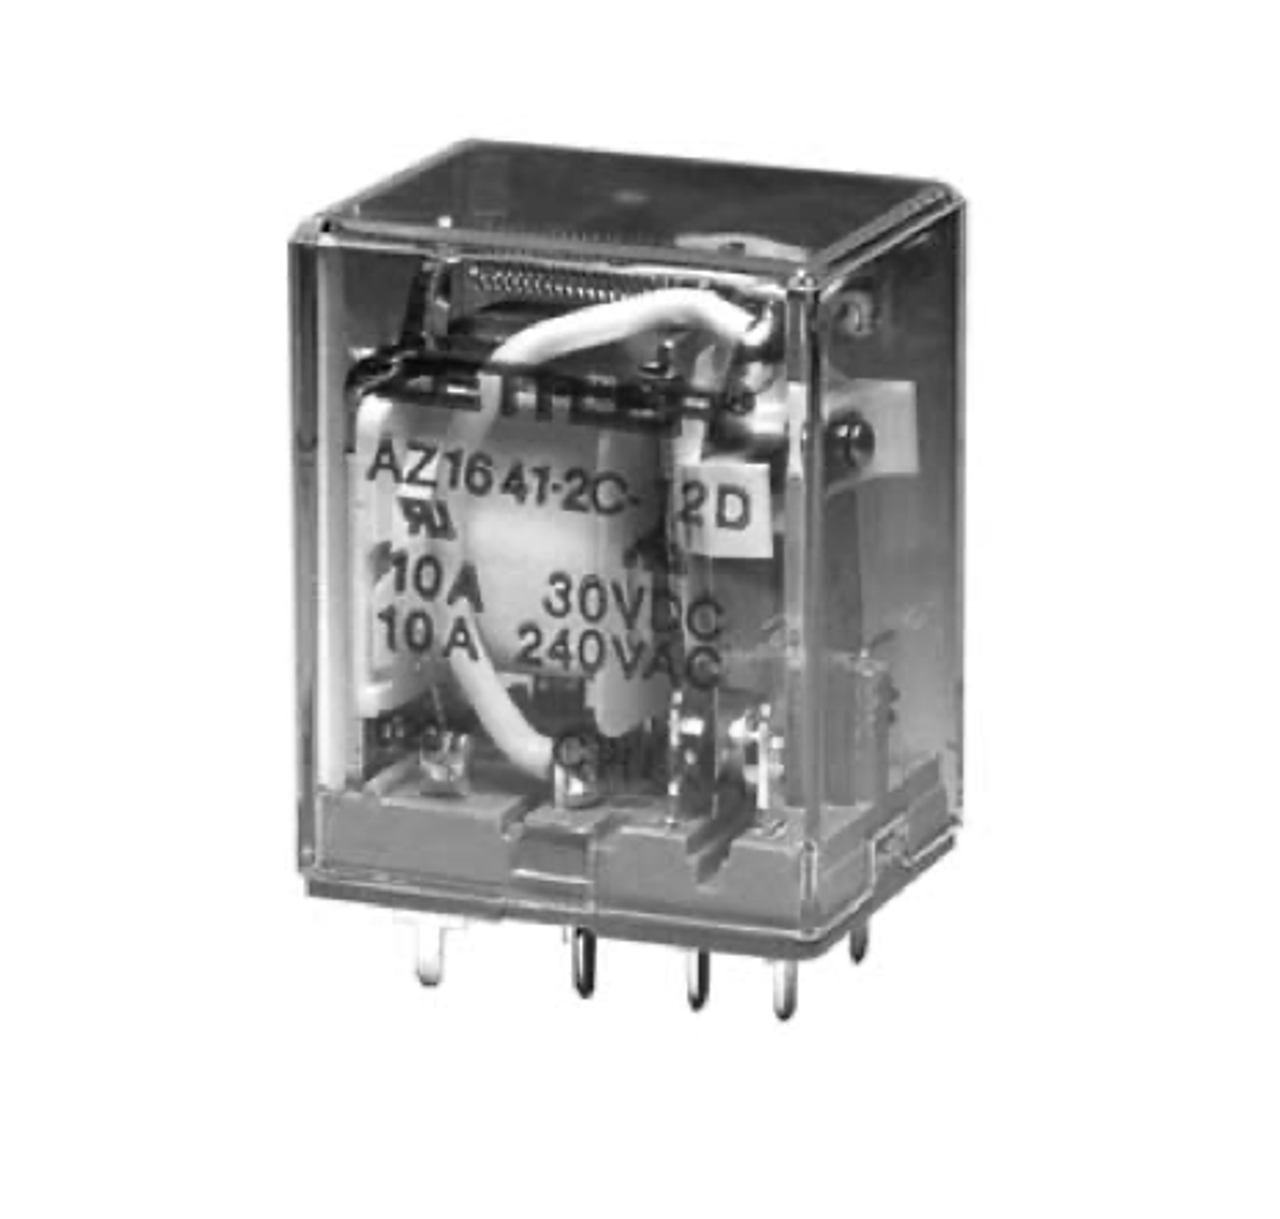 American Zettler AZ1641-2C-48A Power Relay